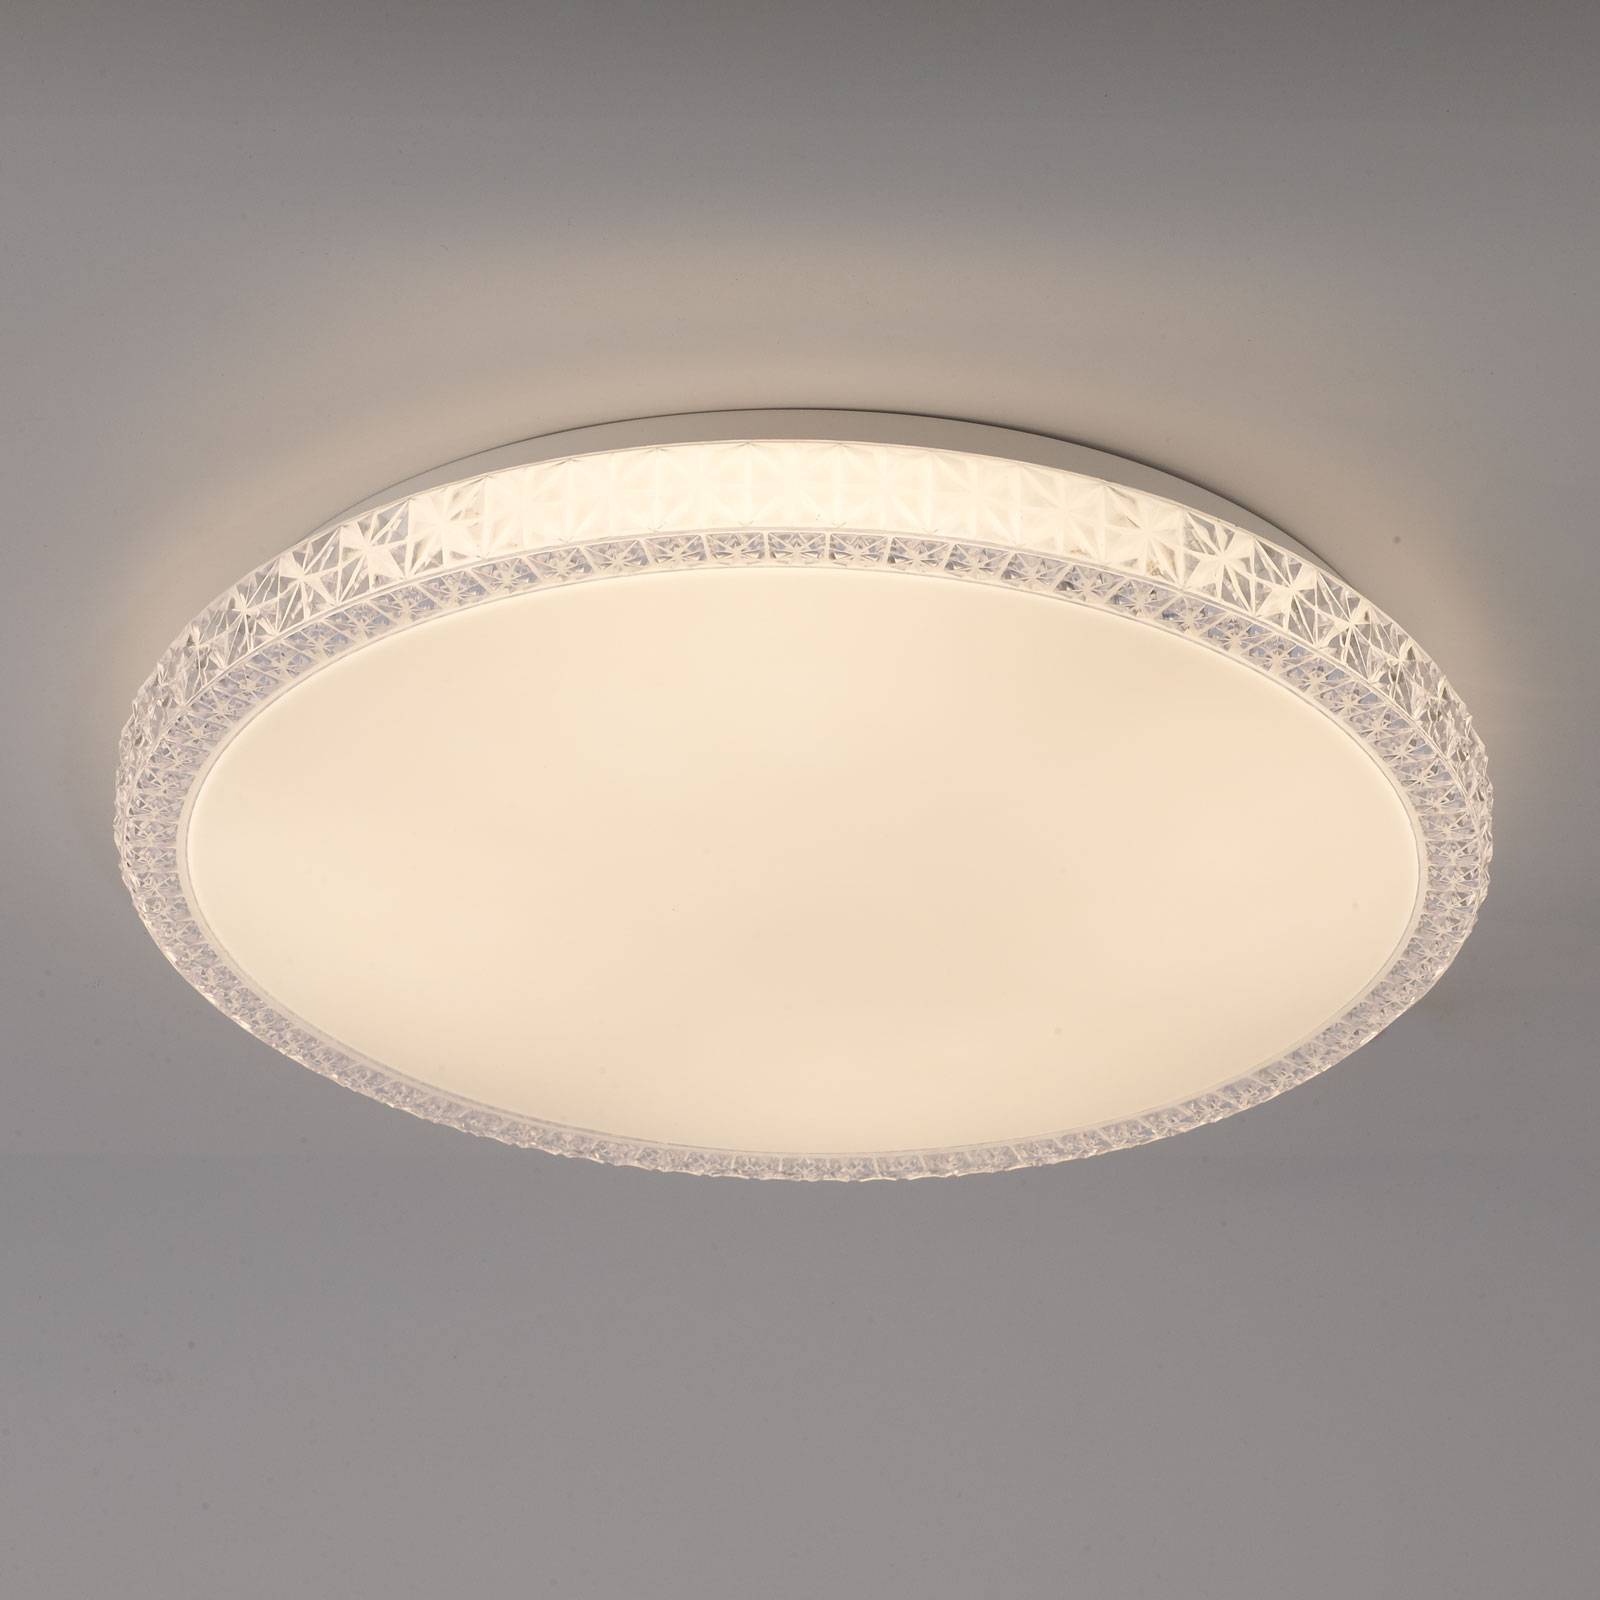 Lampa sufitowa LED Naxos, zmiana barw RGB, biała